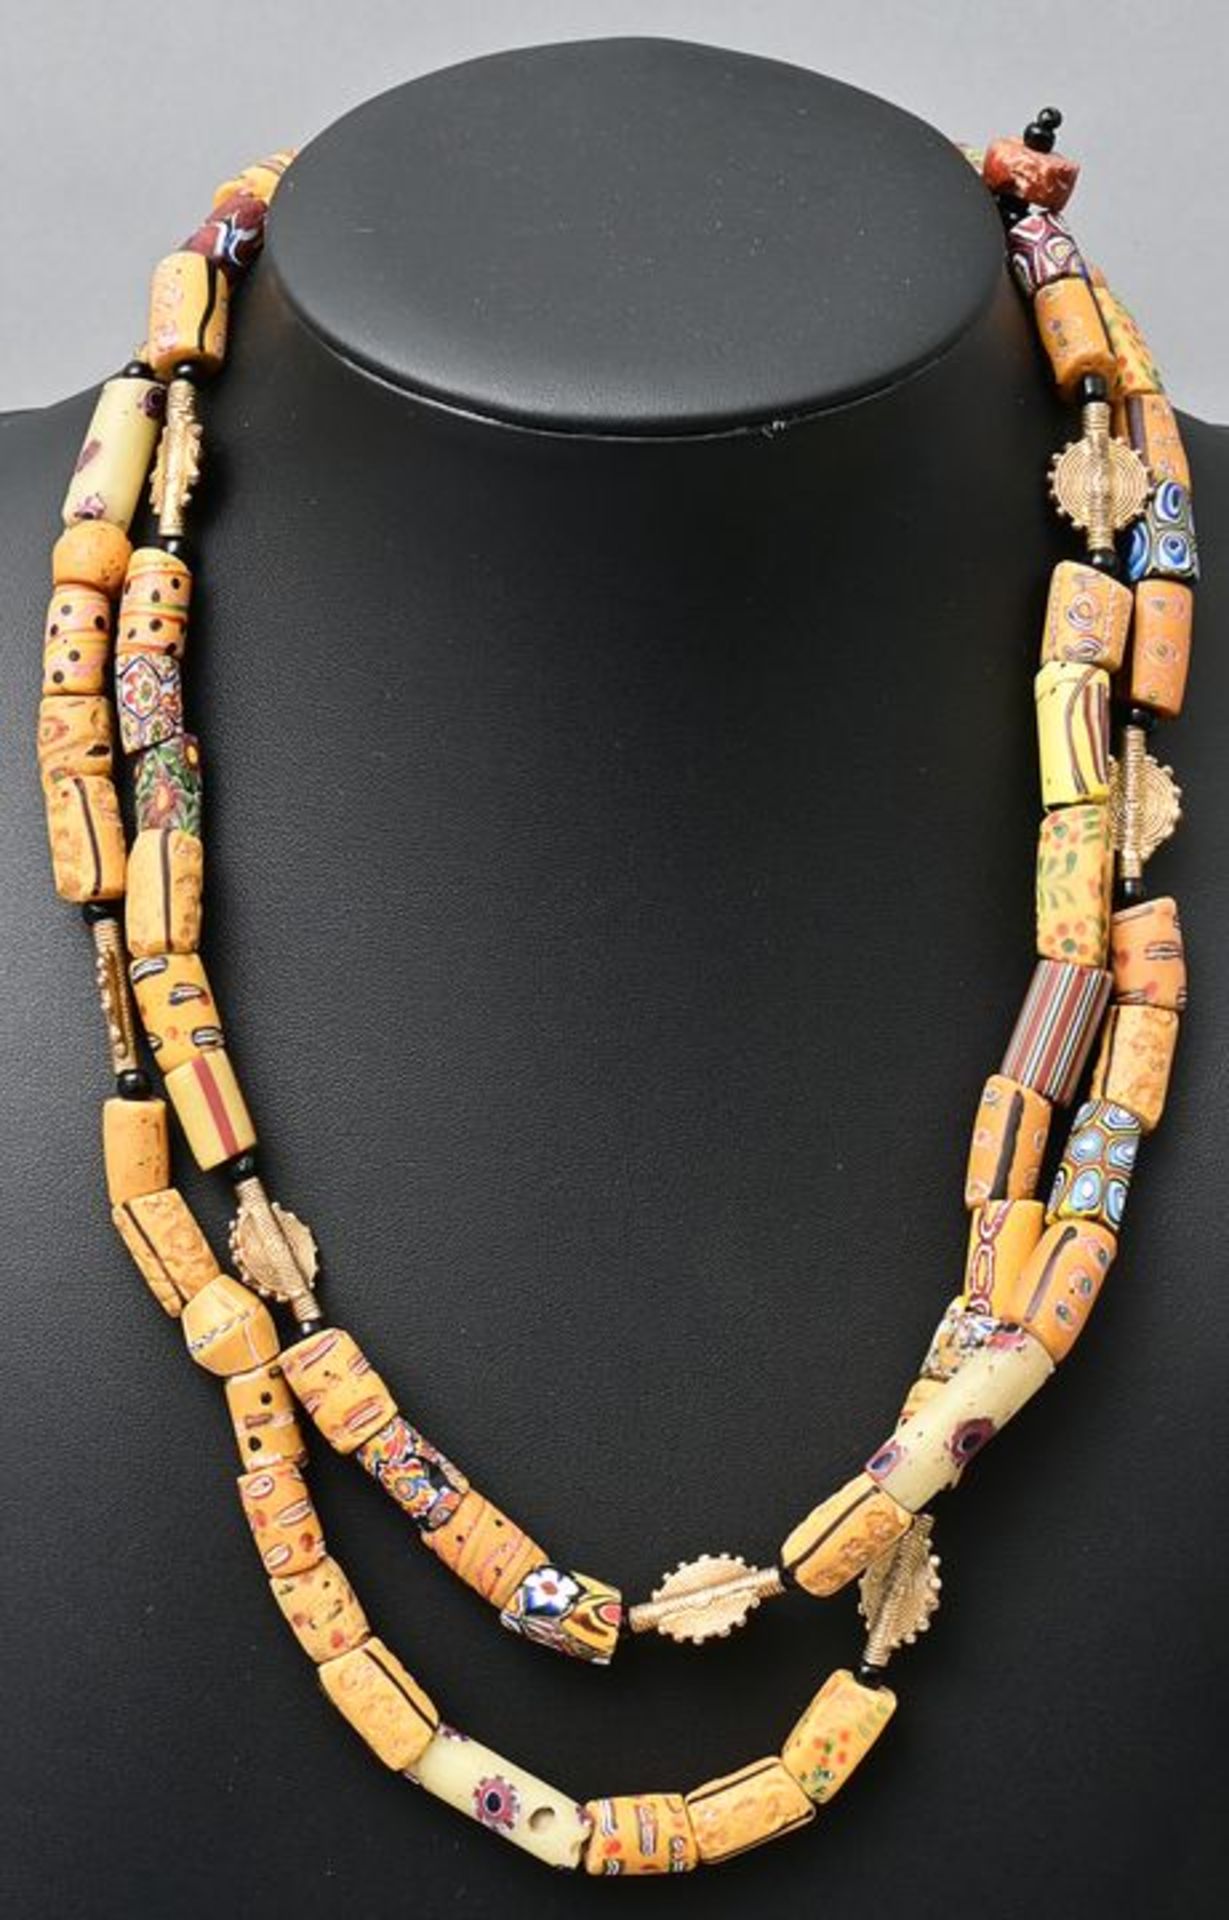 Kette sandfarbene Gasperlen/ Kupfer vergoldete Elemente/ necklace